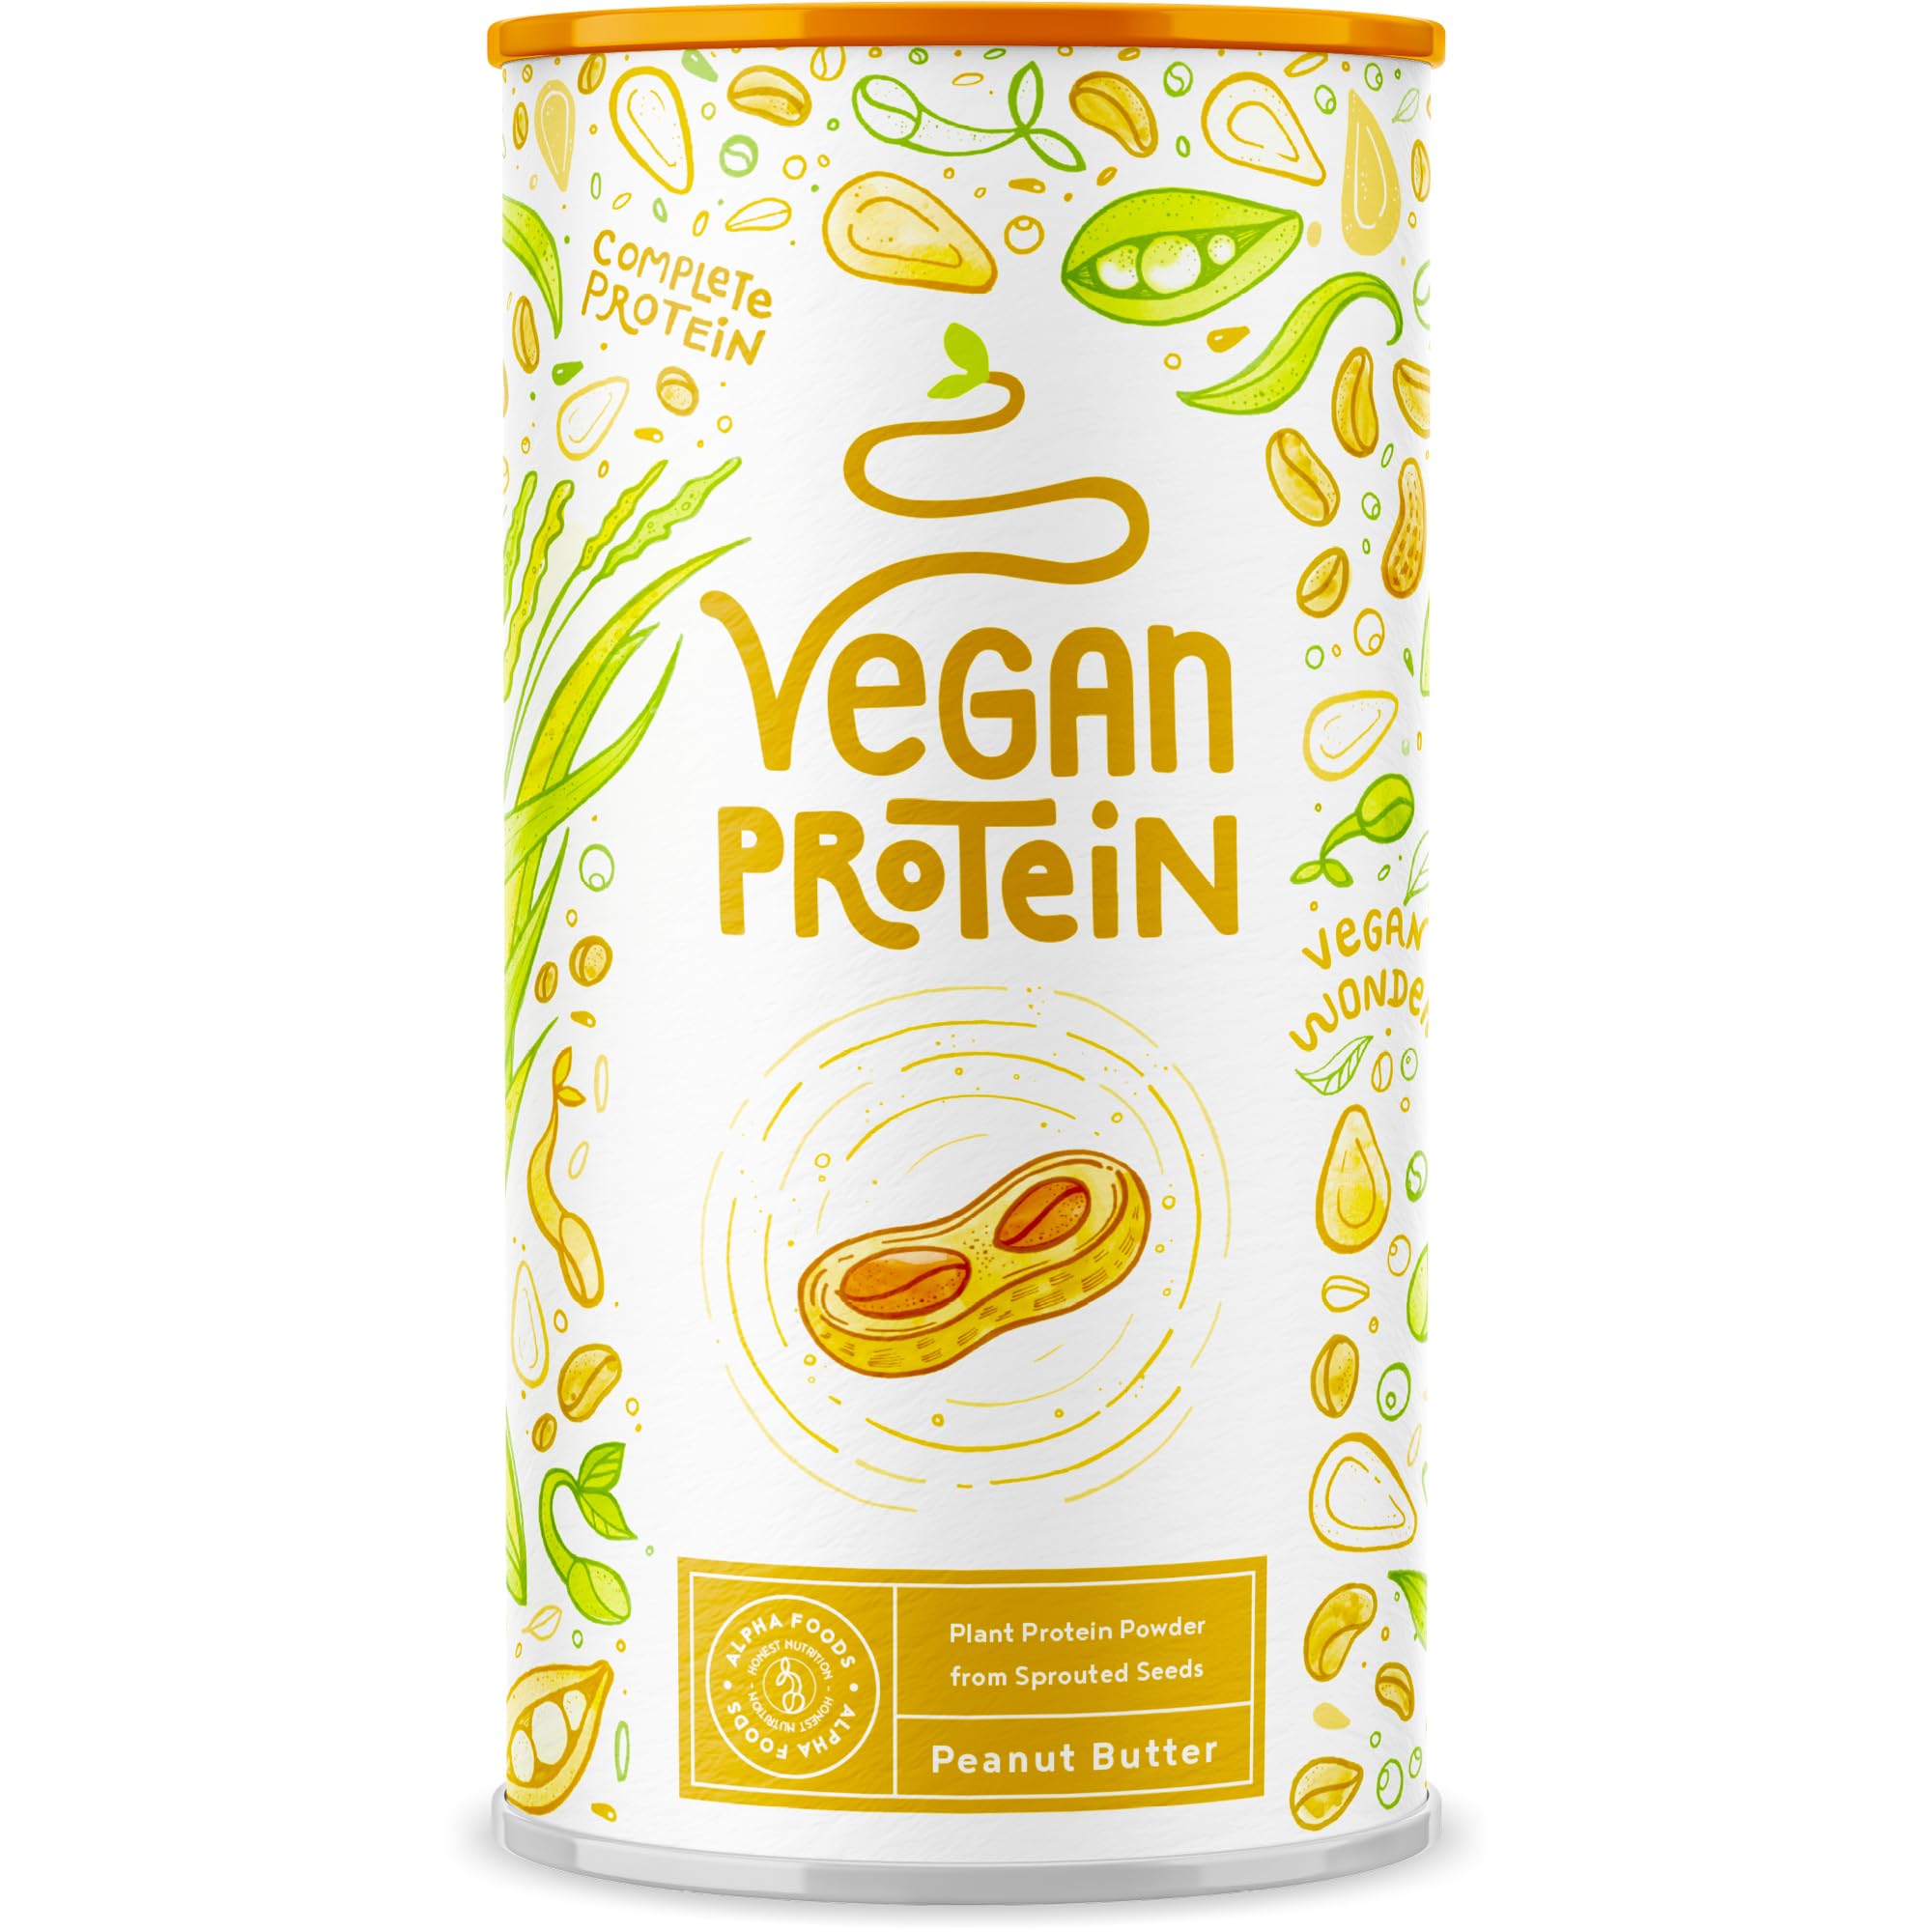 Vegan Protein - ERDNUSSBUTTER - Pflanzliches Proteinpulver aus gesprossten Reis, Erbsen, Chia-Samen, Leinsamen, Amaranth, Sonnenblumen- und Kürbiskernen - 600 Gramm Pulver